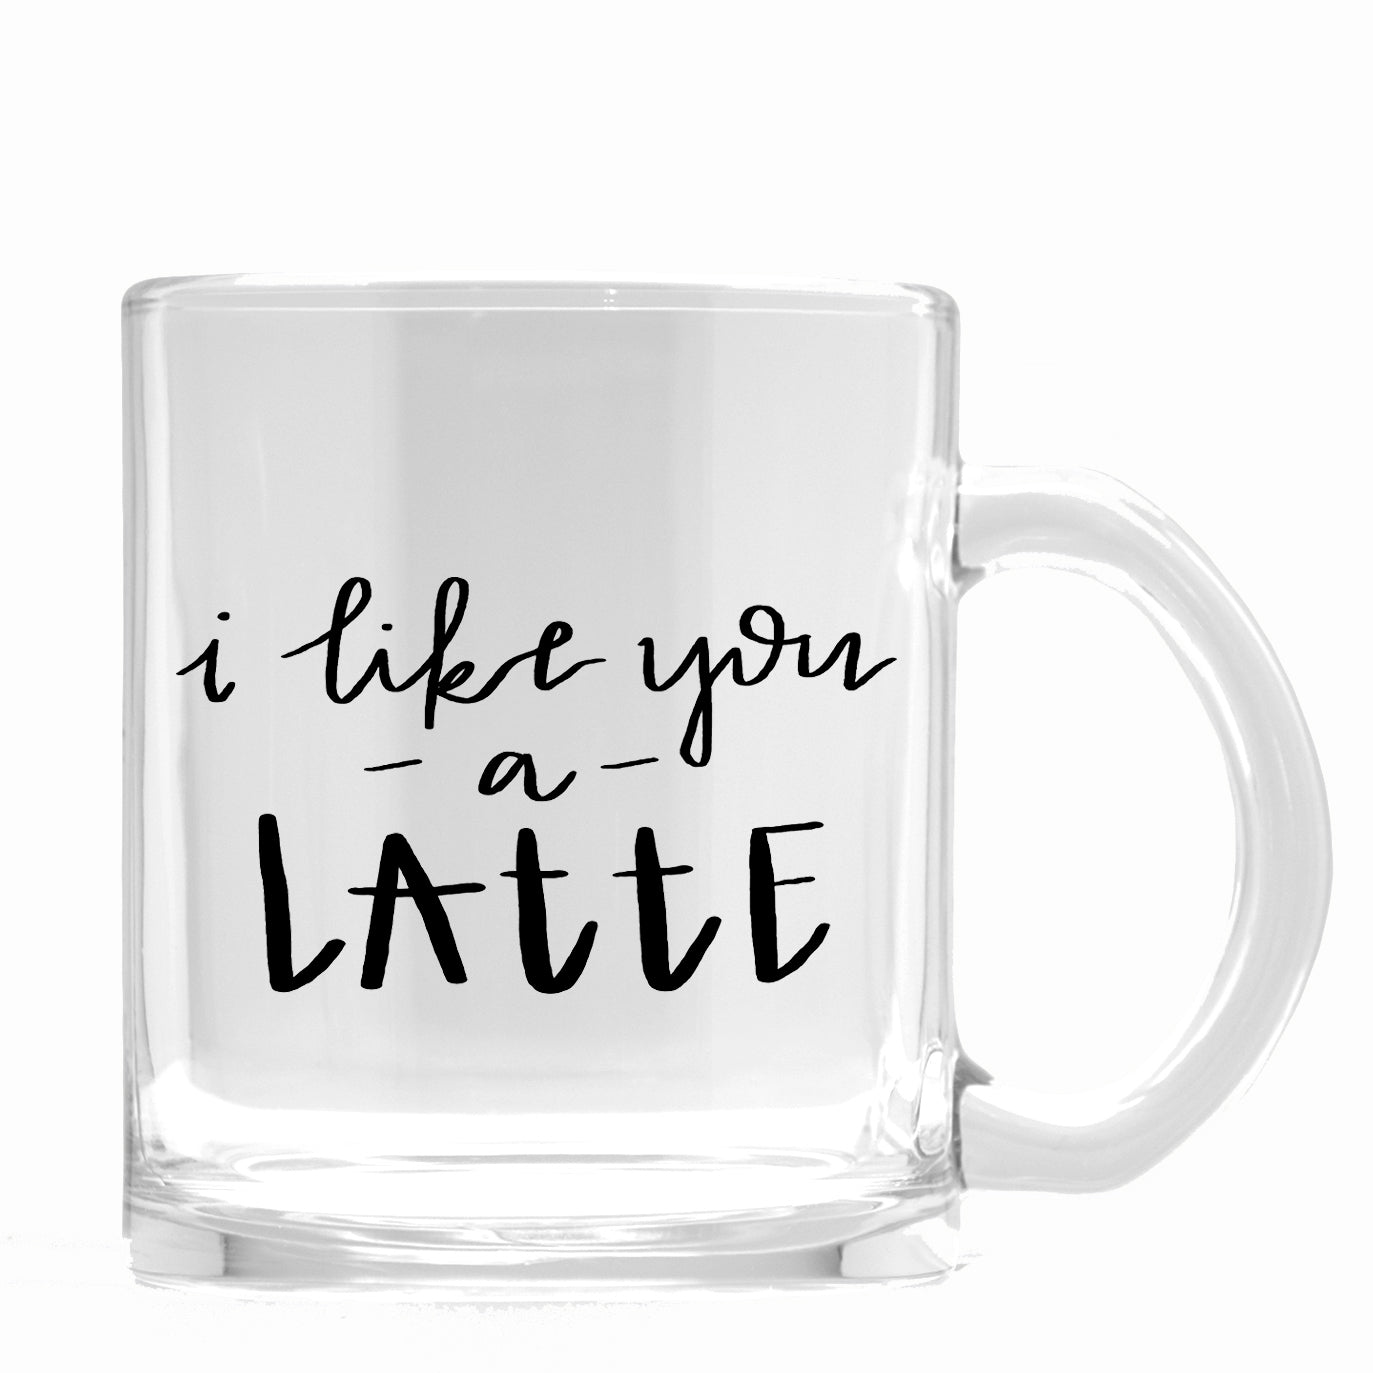 I Like You a Latte Glass Coffee Mug